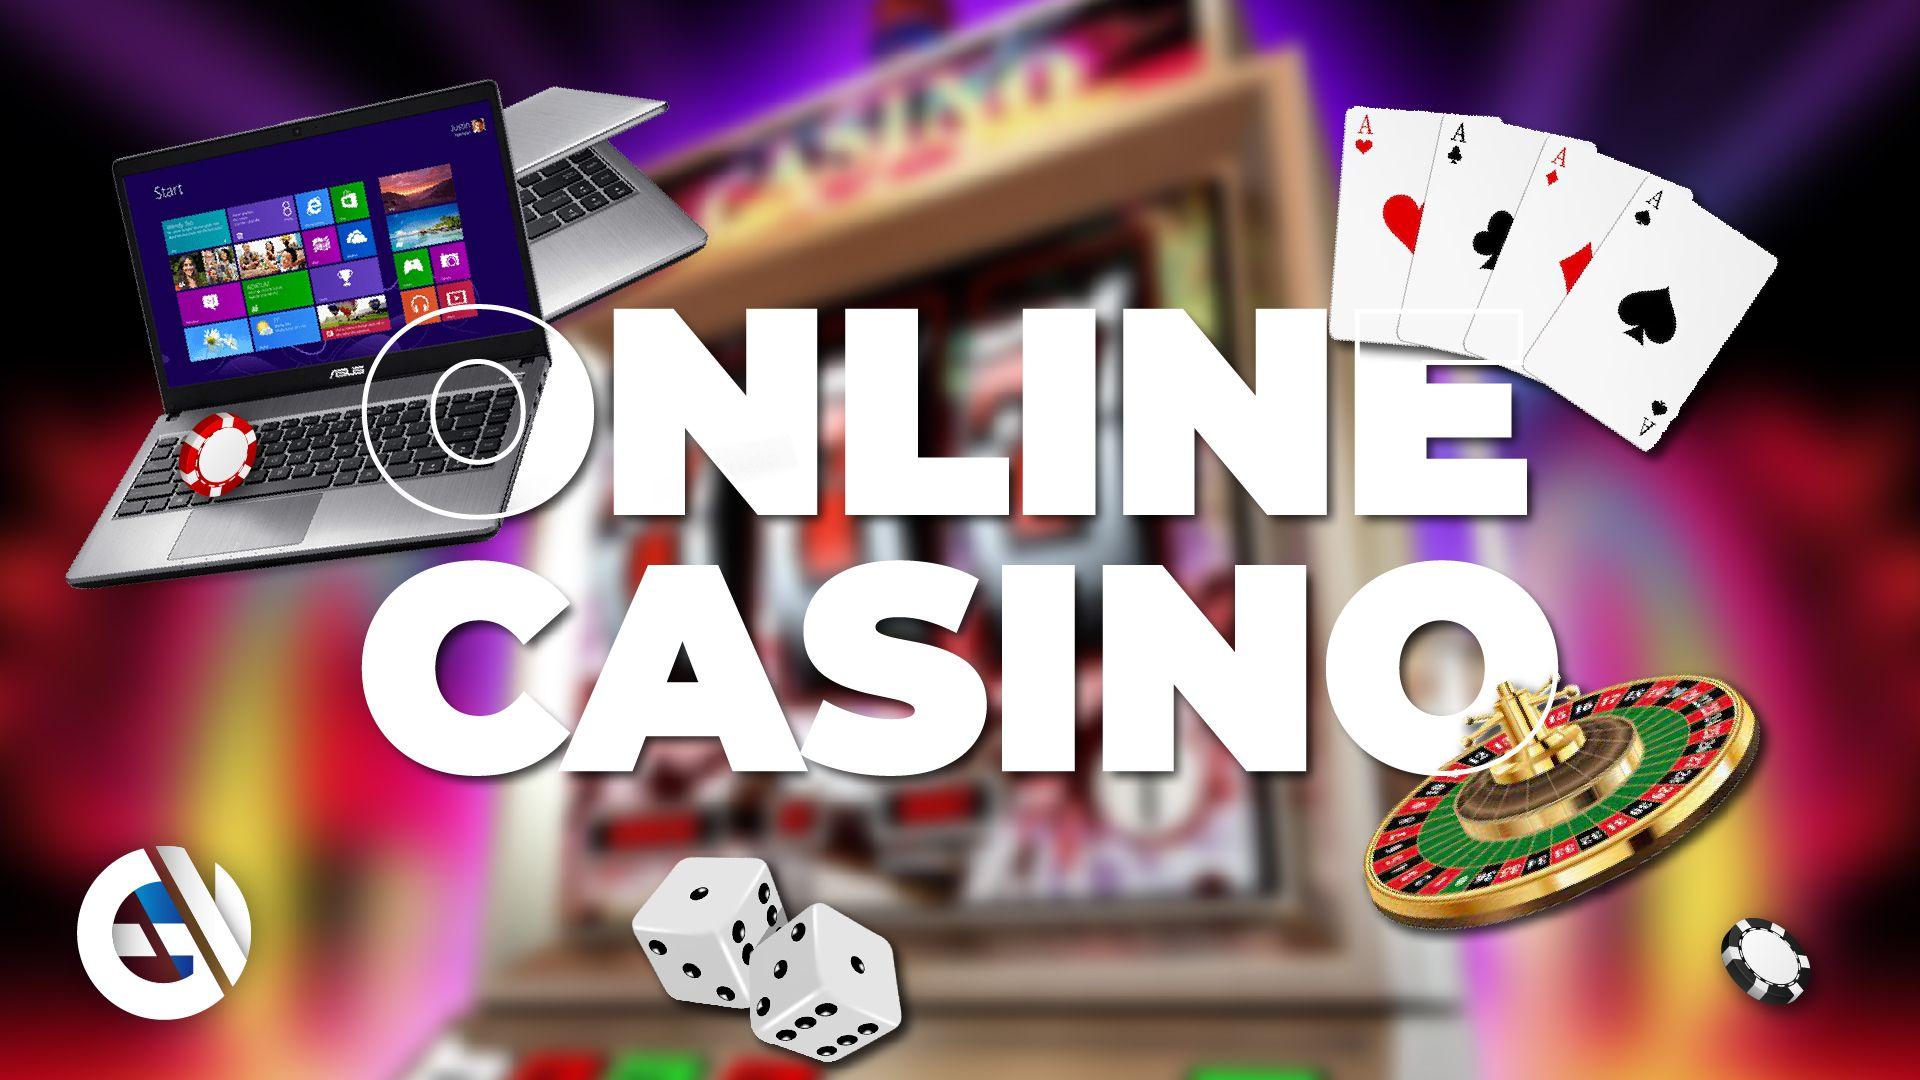 Безопасность онлайн-казино: как проверить свой игровой опыт?